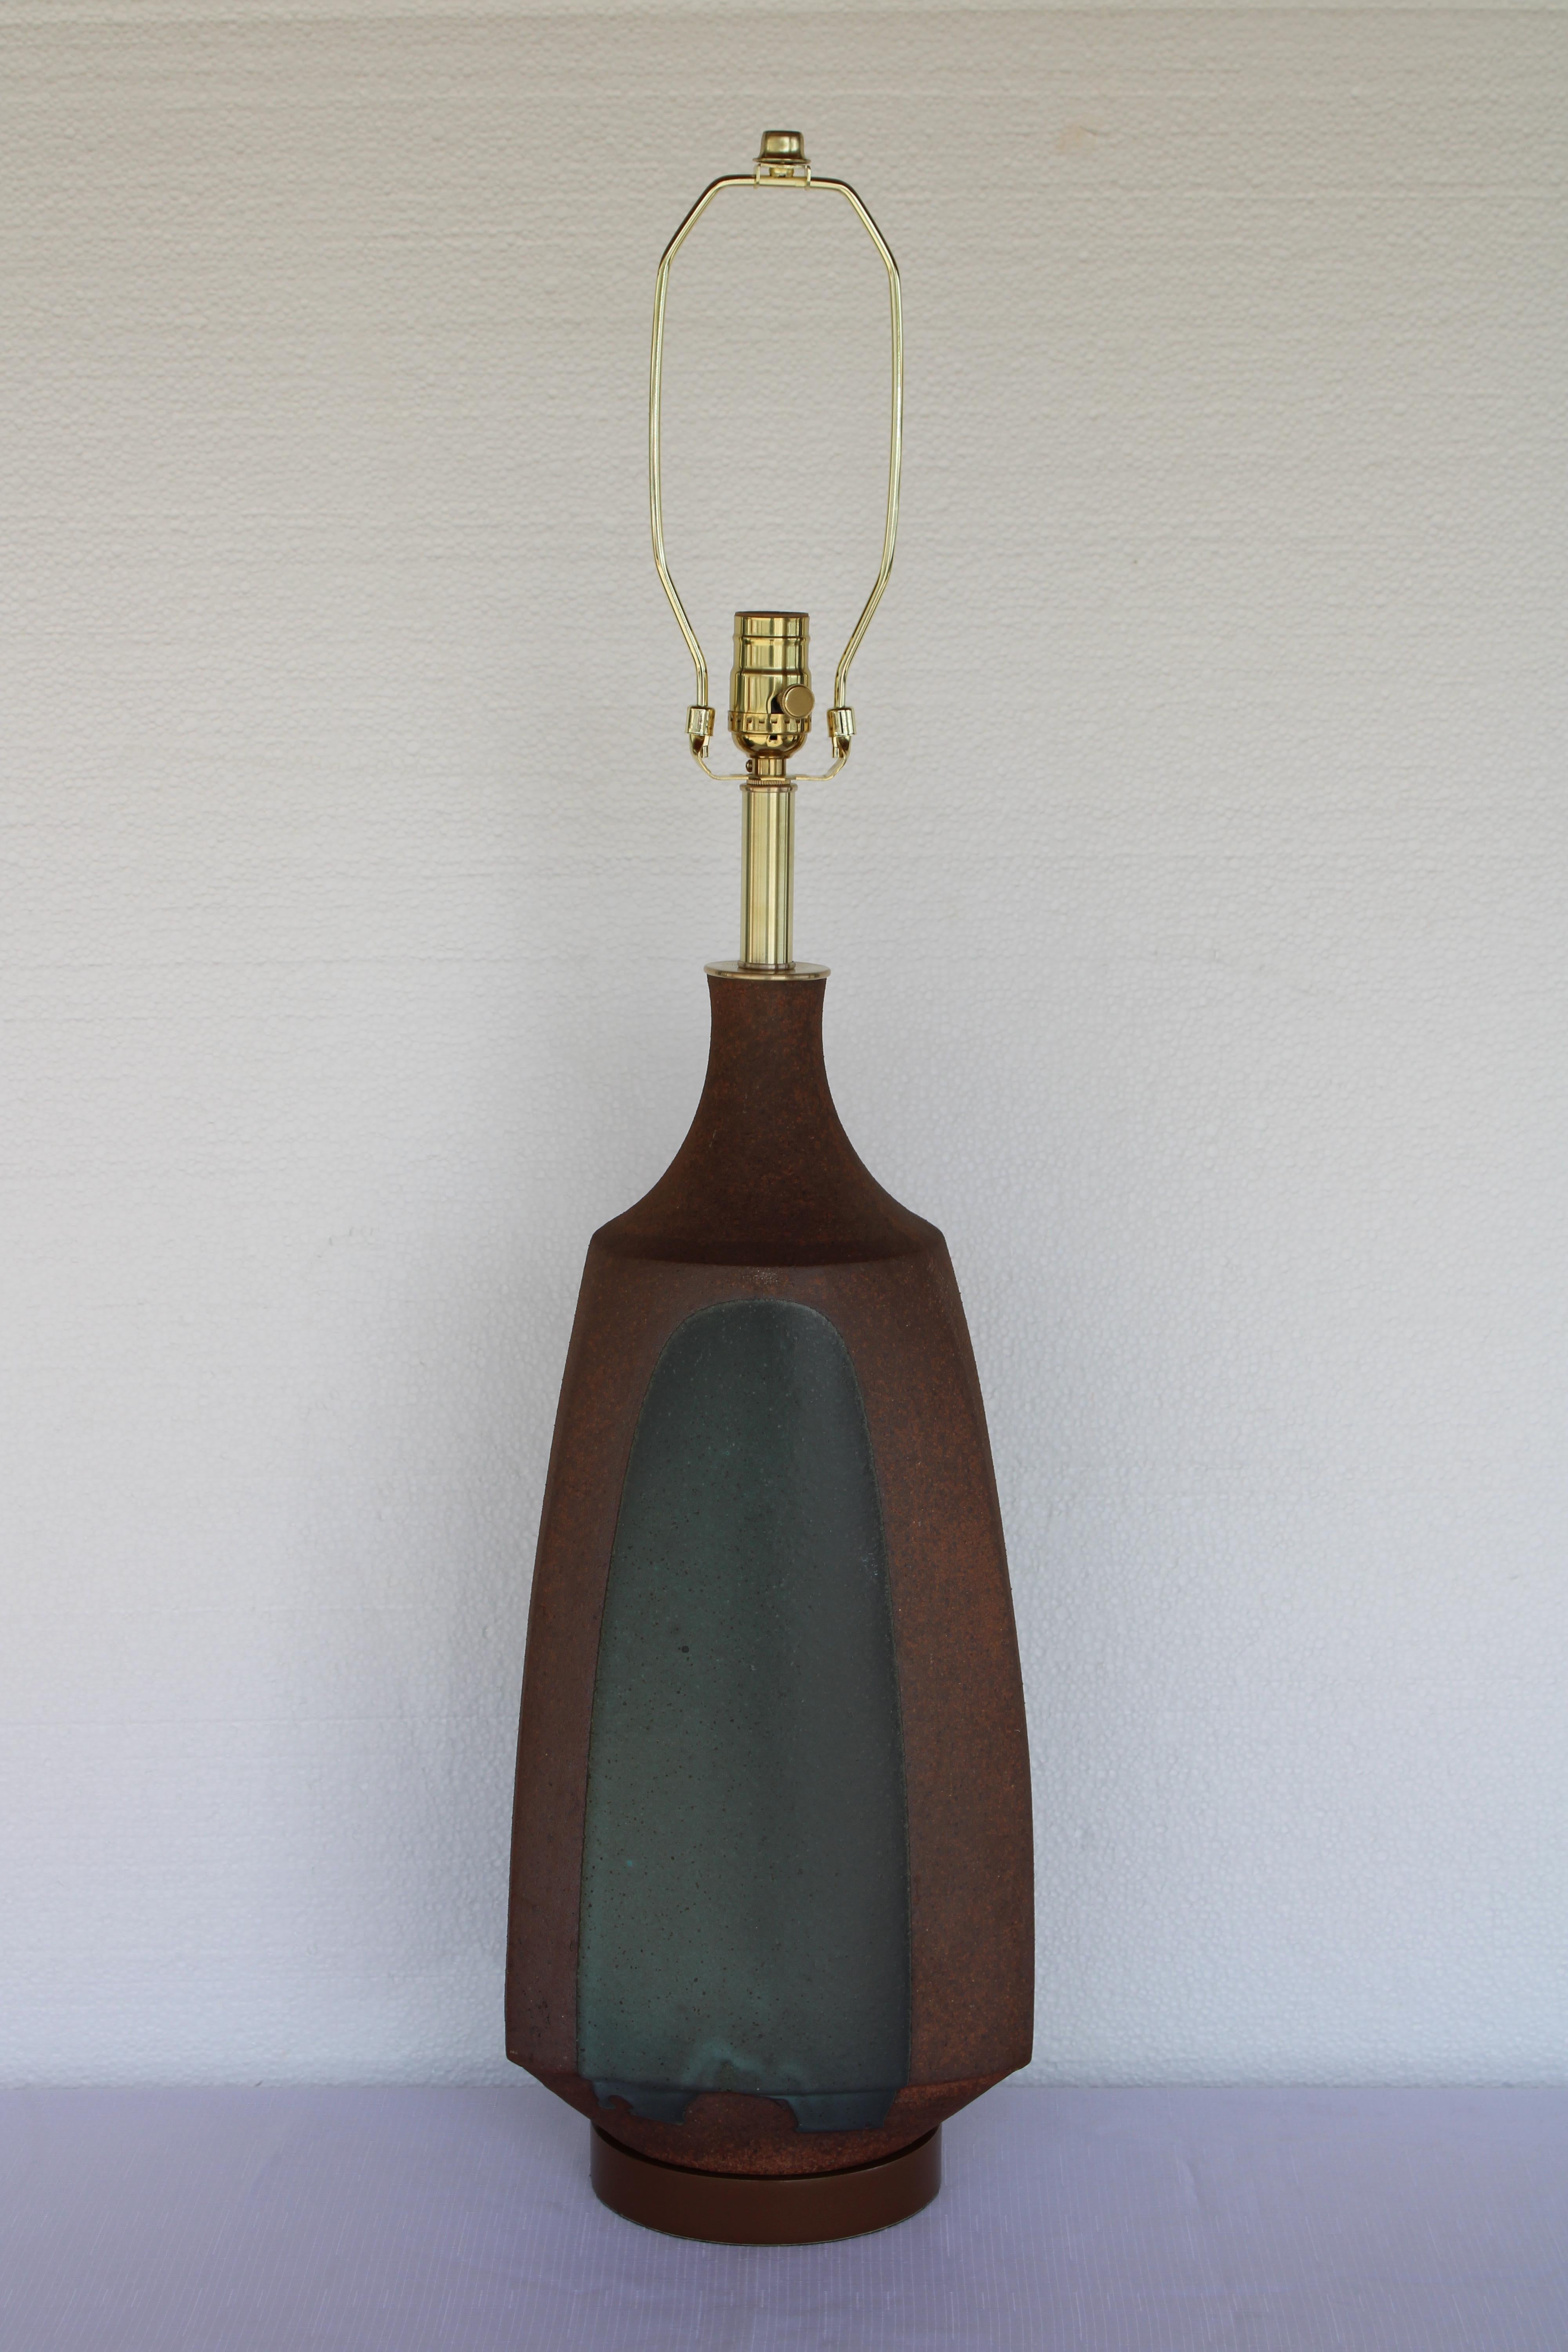 Dreiseitige Steingutlampe von David Cressey.  Lampe misst 24.